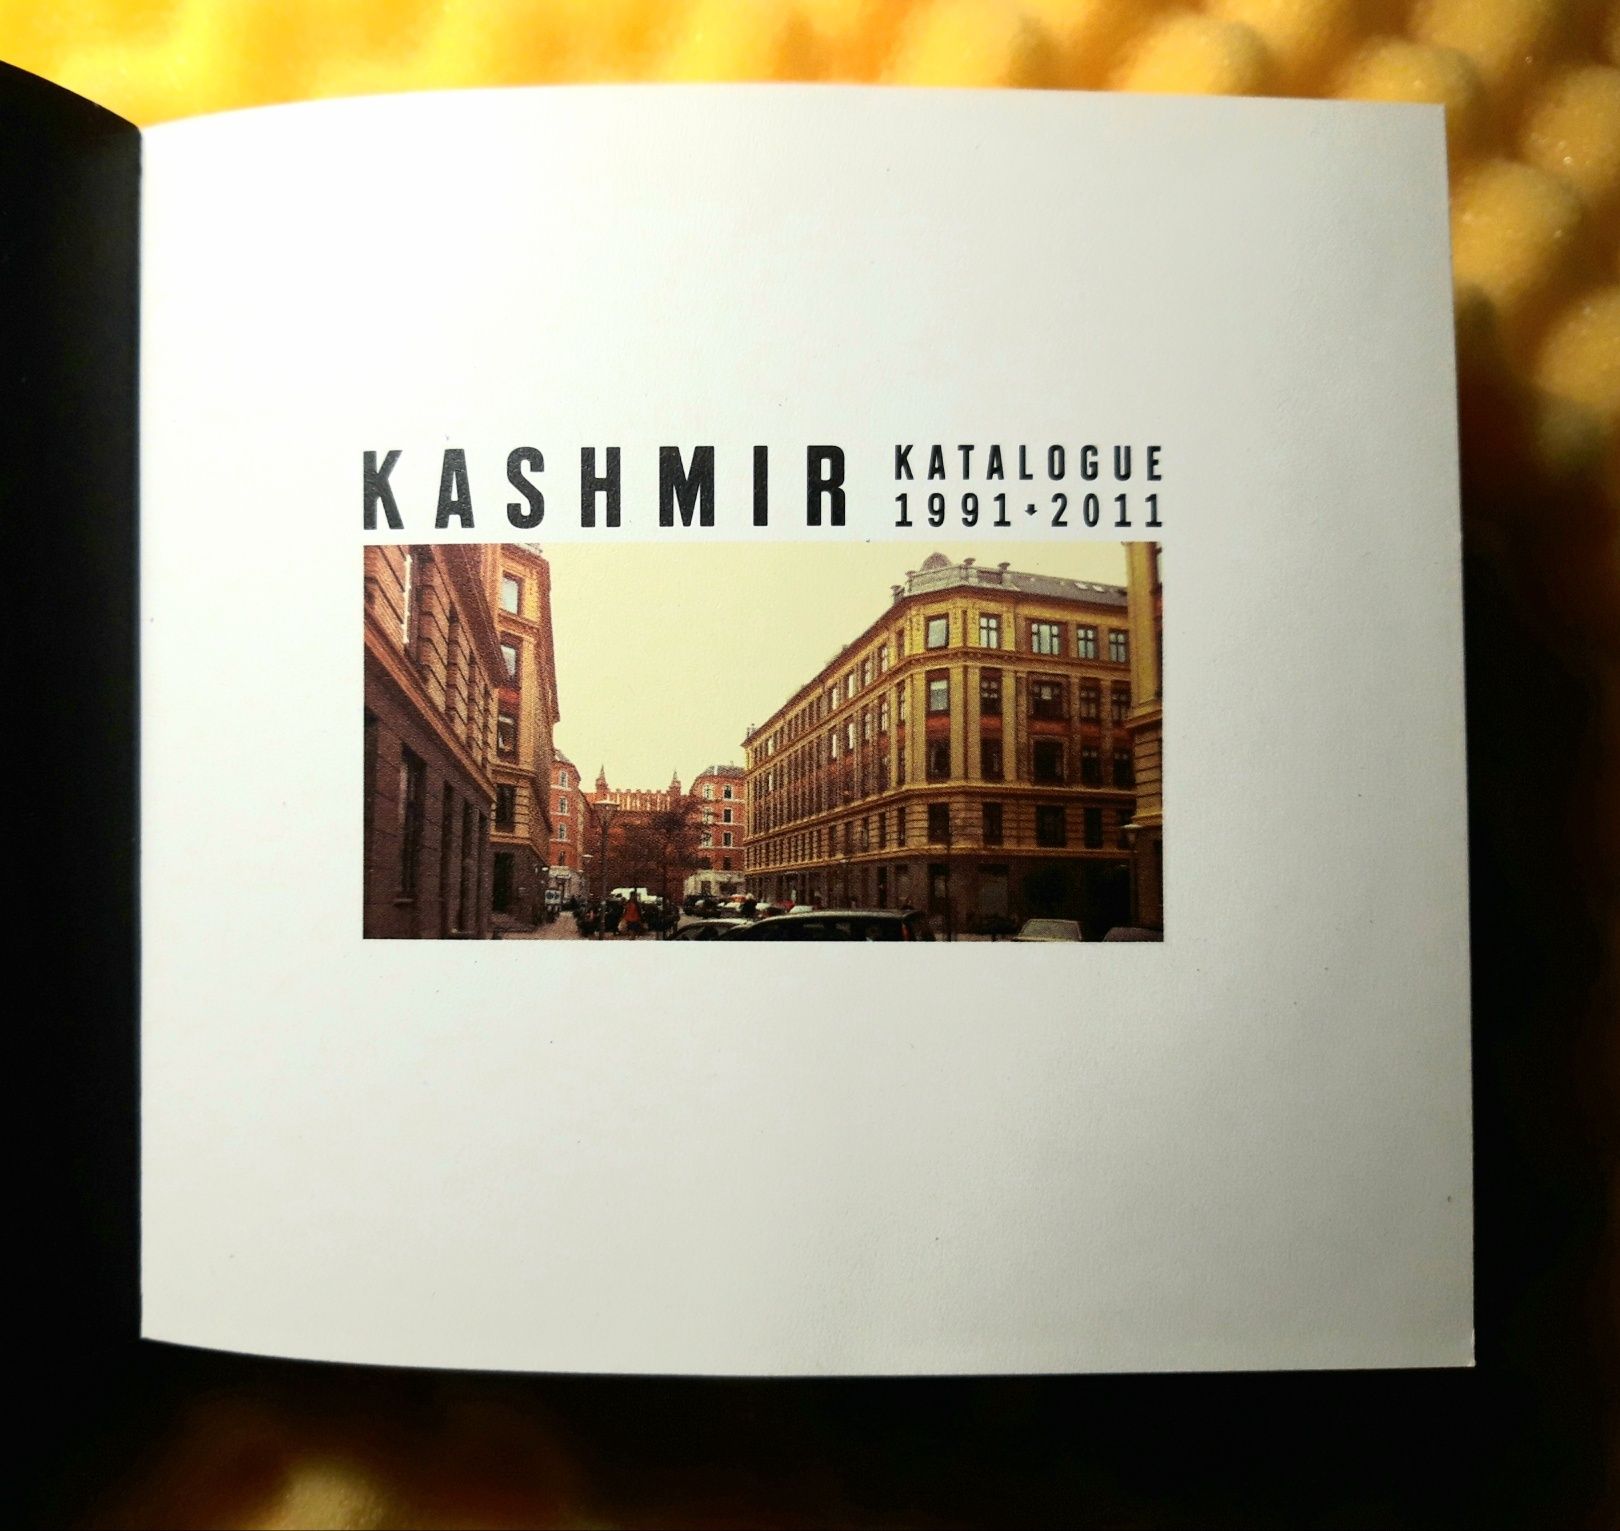 Kashmir - Katalogue 1991 - 2011 (2xCD, 2011)